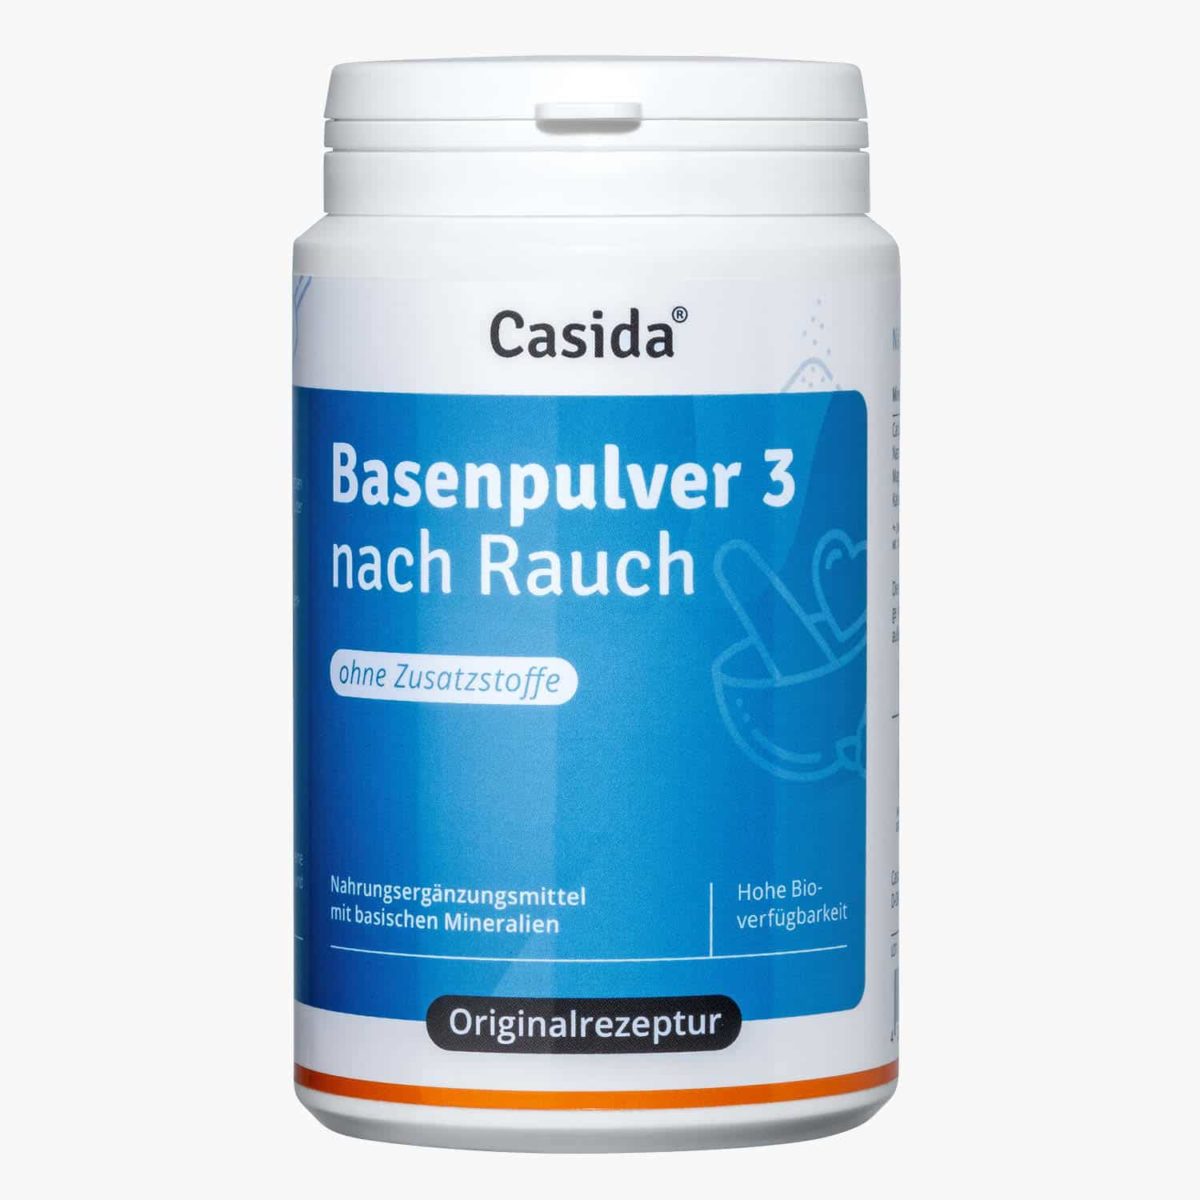 Casida alkaline powder 3 nach Rauch – 200 g 11058942 PZN Apotheke basisch Säure Basen Kur